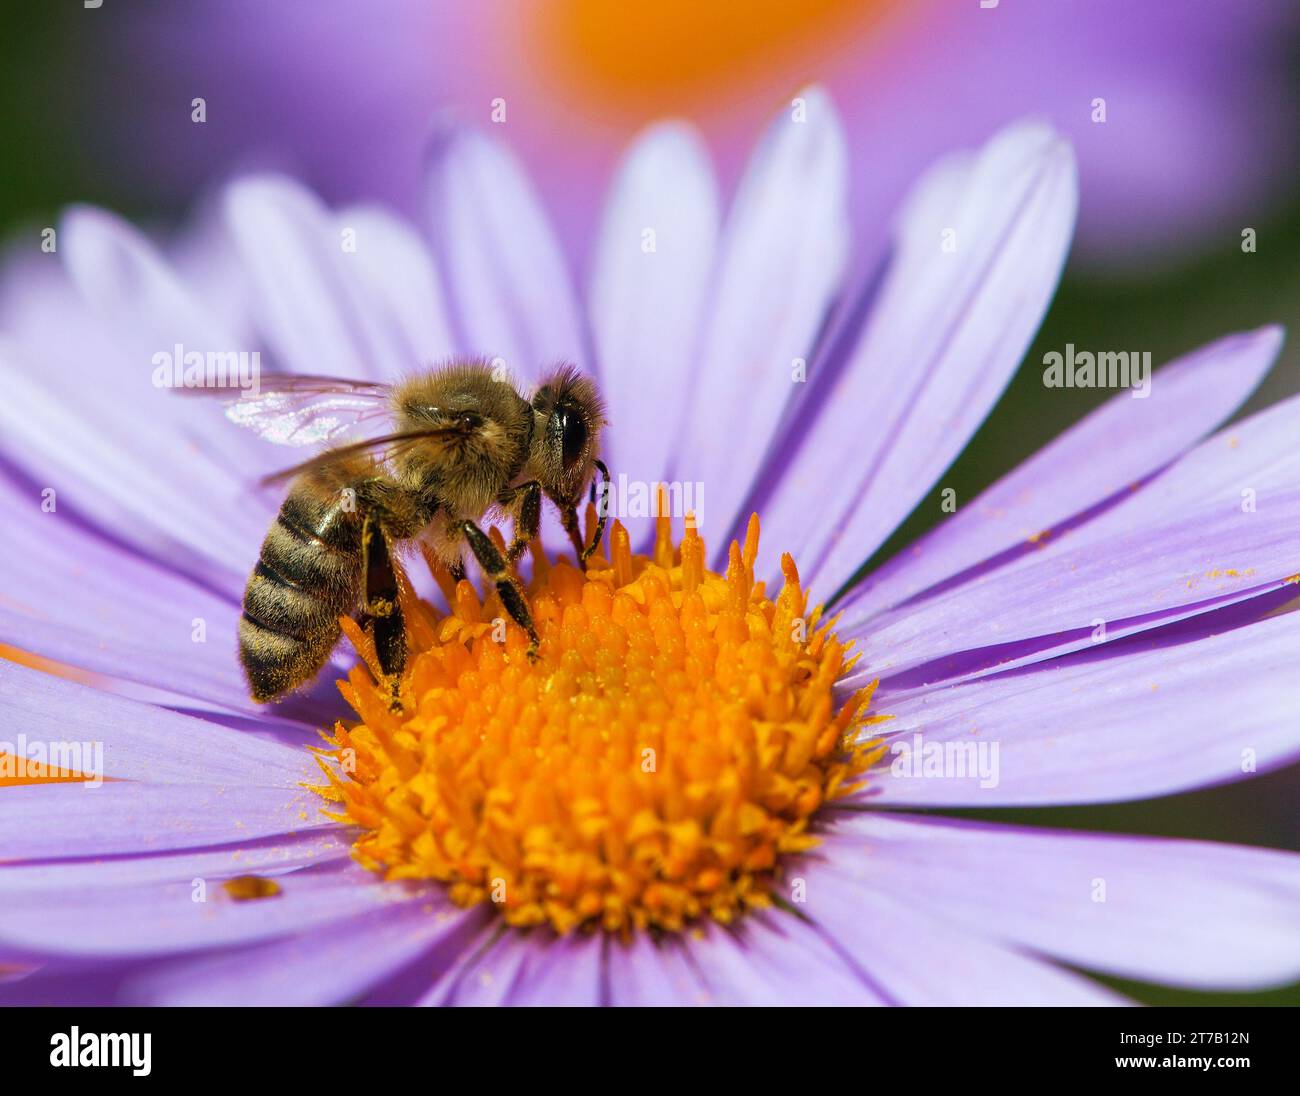 Biene oder Honigbiene in Latein APIs Mellifera, europäische oder westliche Honigbiene, die auf der blau-gelb-violetten oder violetten Blume sitzt Stockfoto